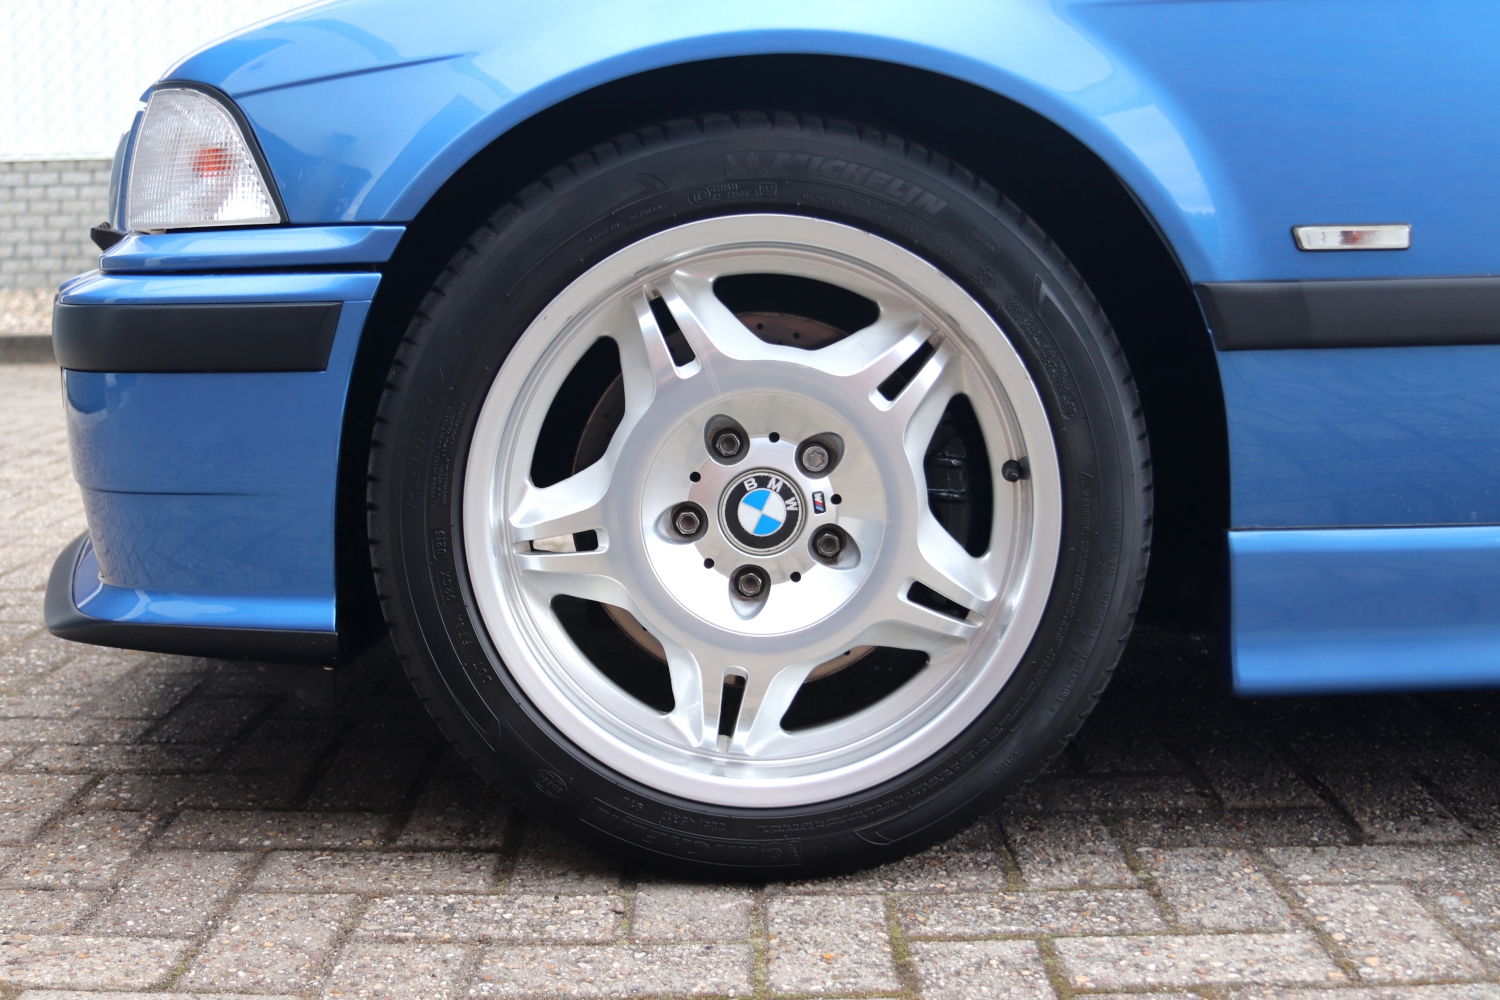 BMW-M3-Cabriolet-3.2-E36-1997-SBNJ95-076.JPG